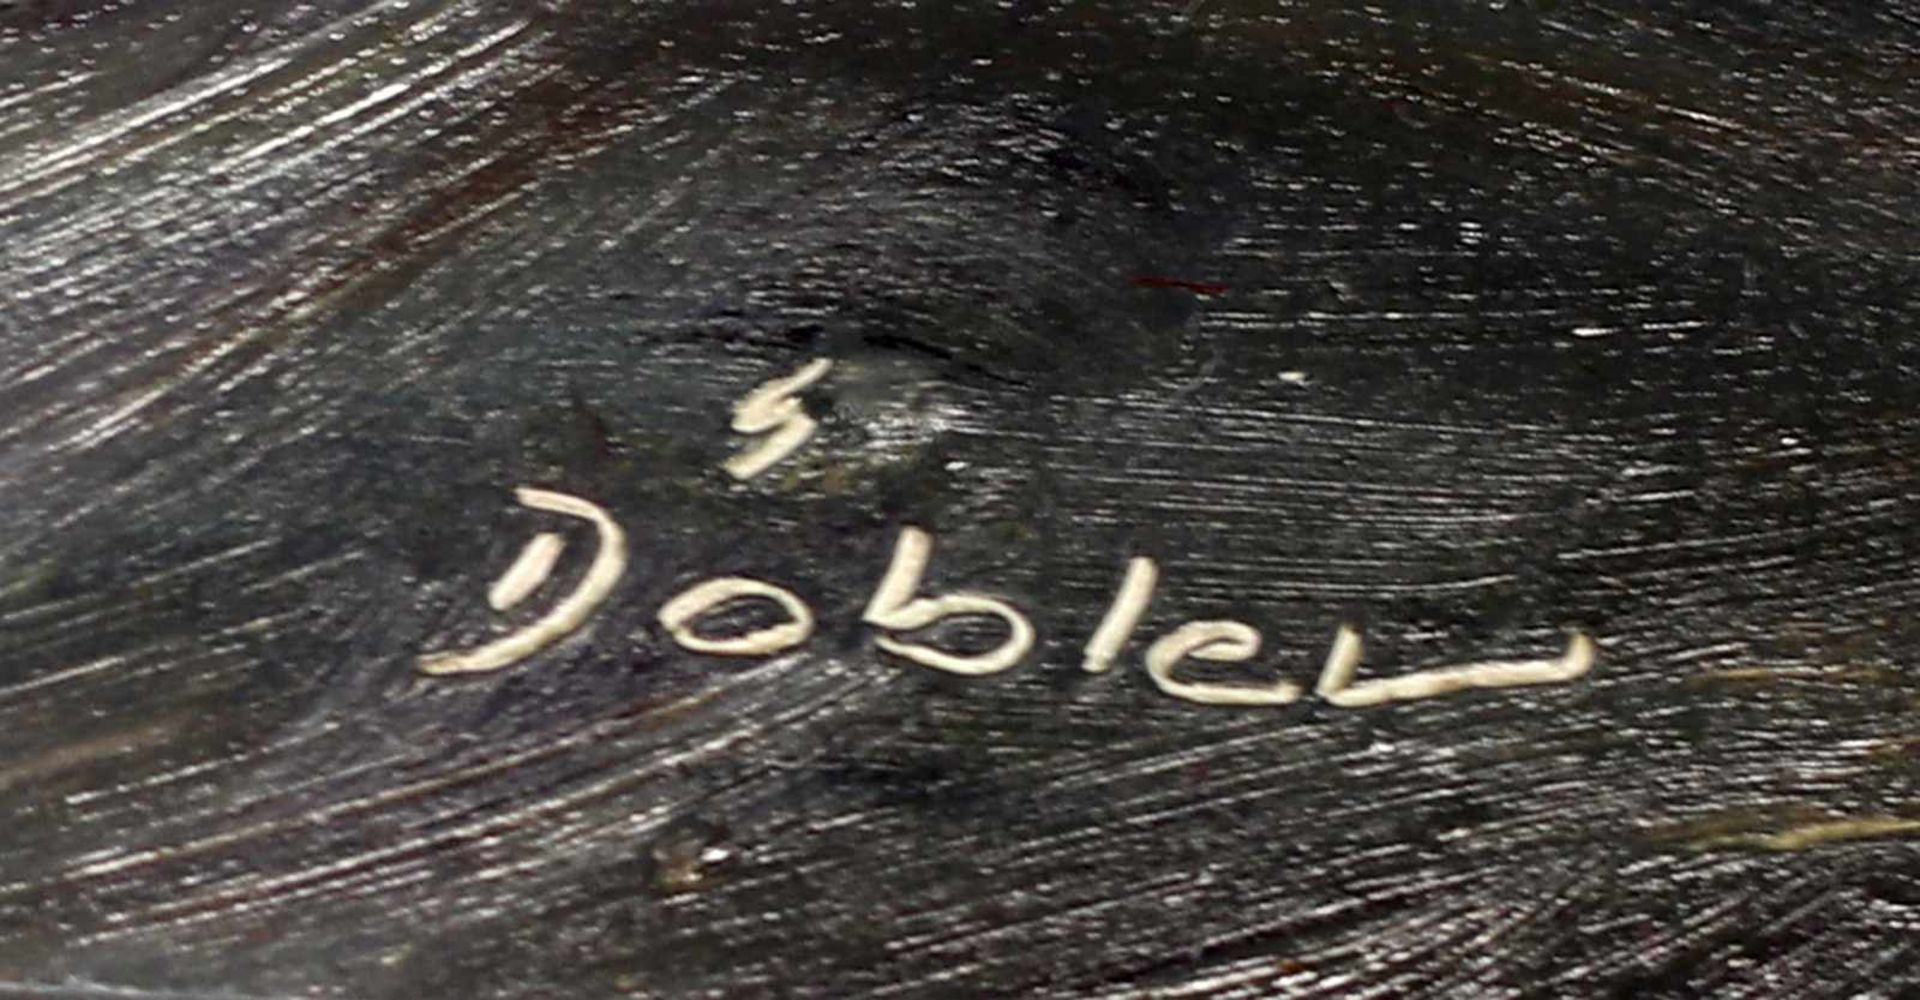 Döbler, Gänsere. u. sign. "Döbler", Erich Döbler, verz. in artprice.com, 1920-2014, dt. Maler, - Bild 2 aus 2